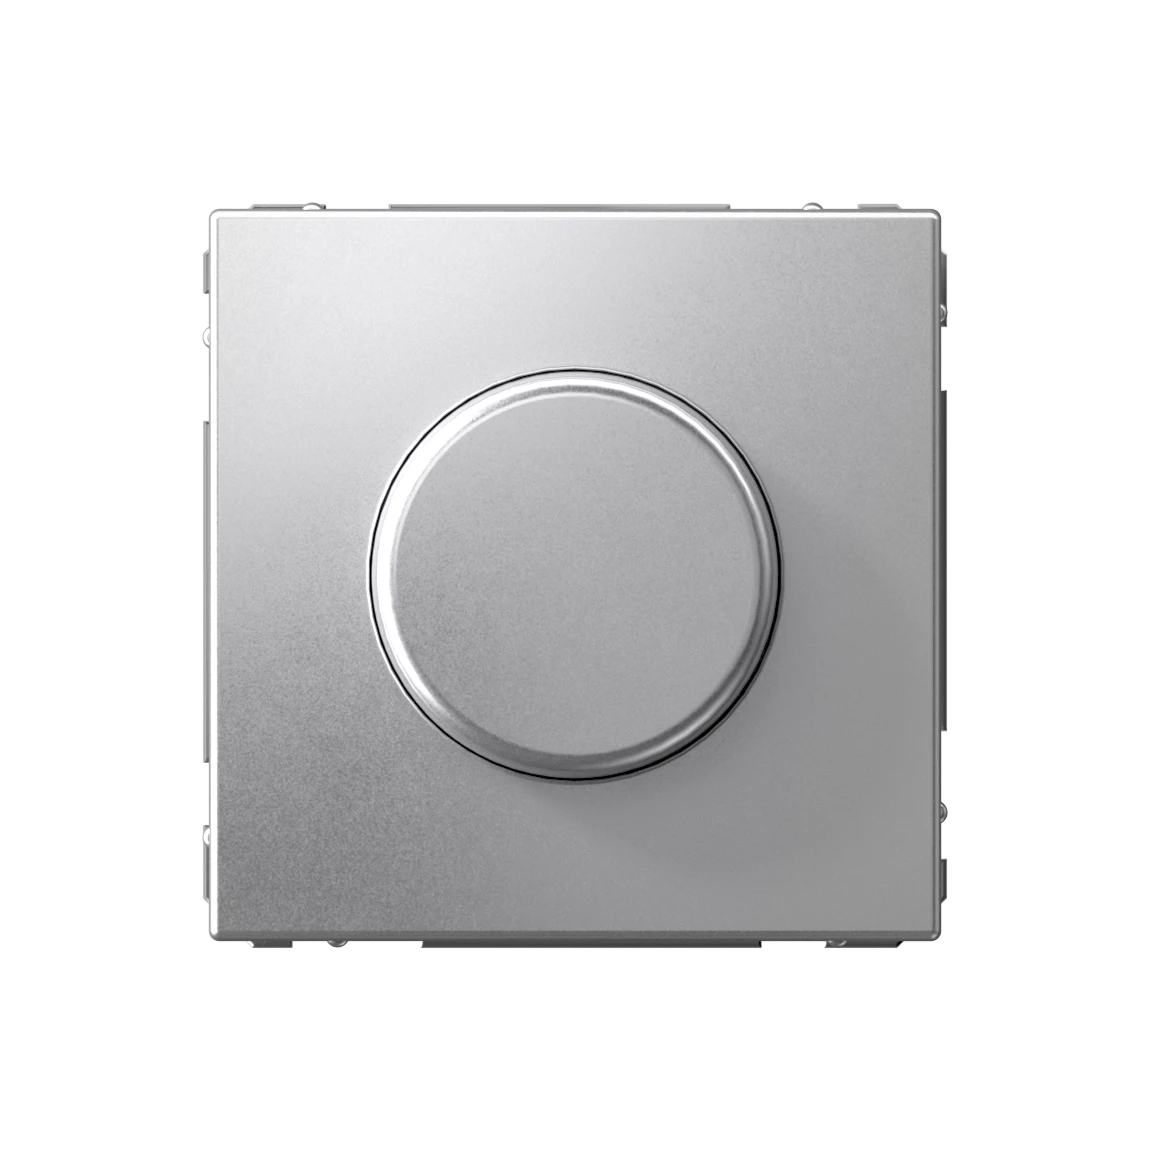  артикул GAL000323 название Светорегулятор кнопочный 400Вт (универсальный) , Алюминий, серия Art Gallery, Systeme Electric